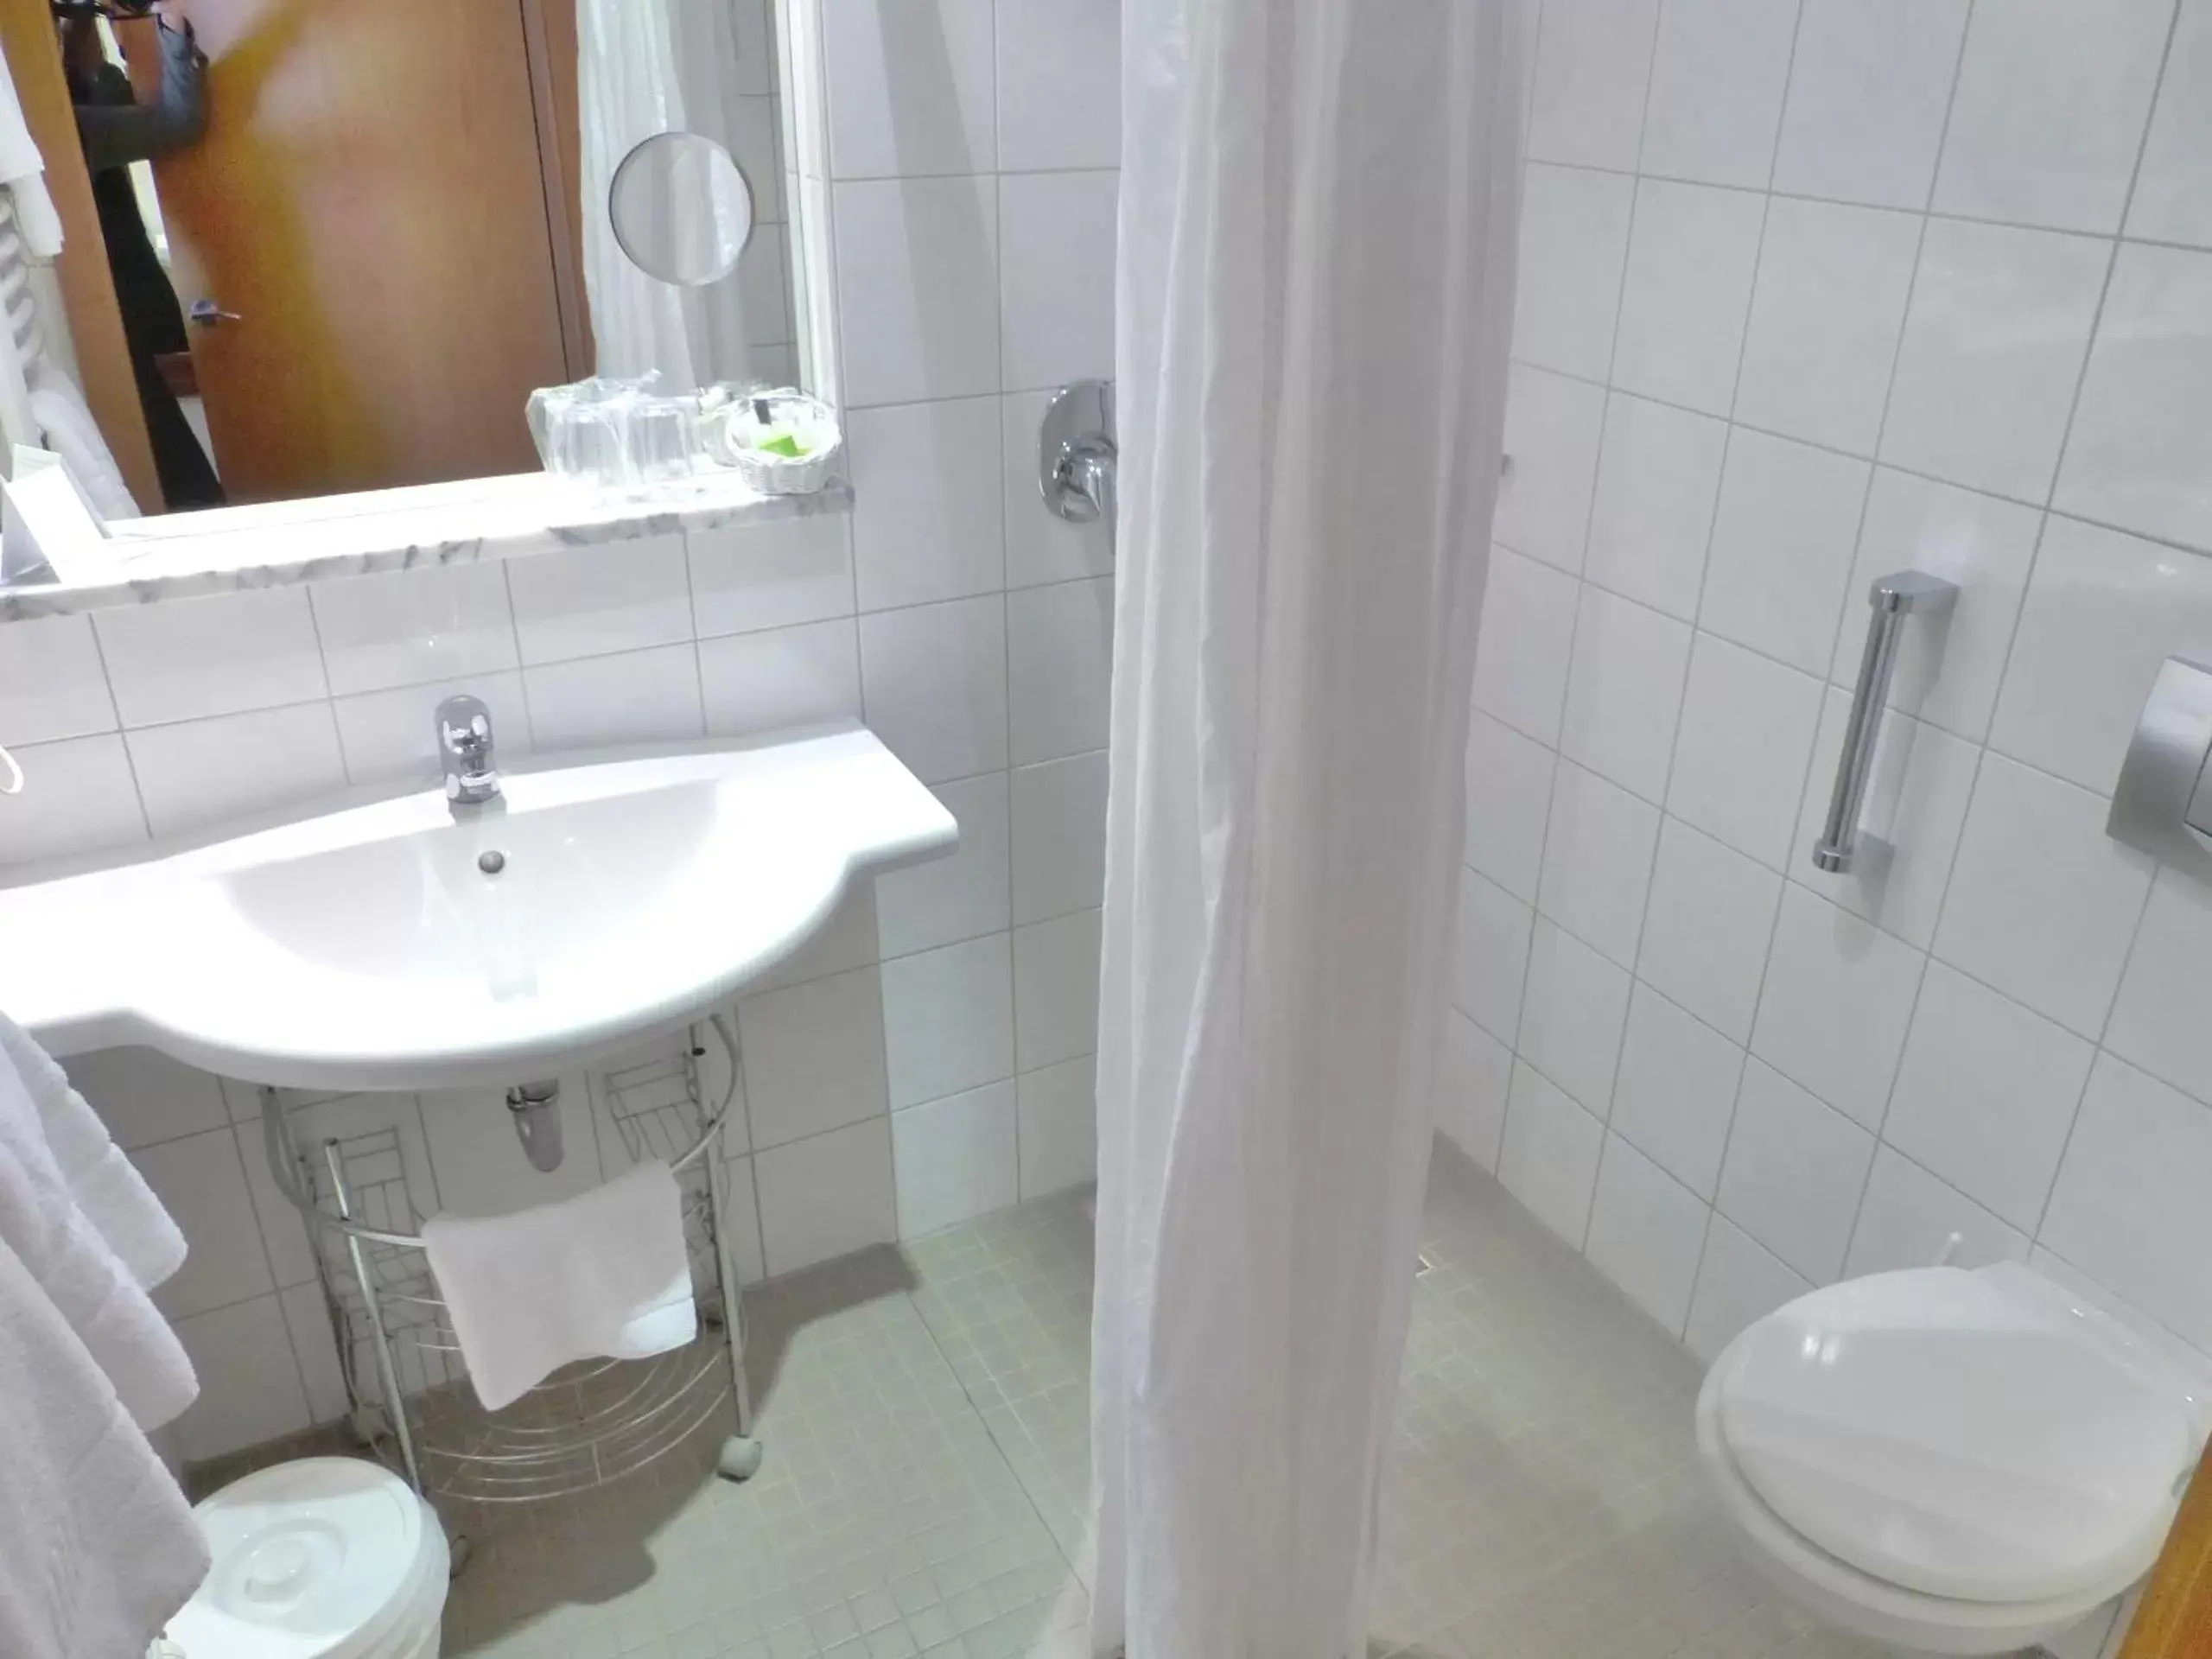 Bathroom in Aktiv Hotel Schweiger